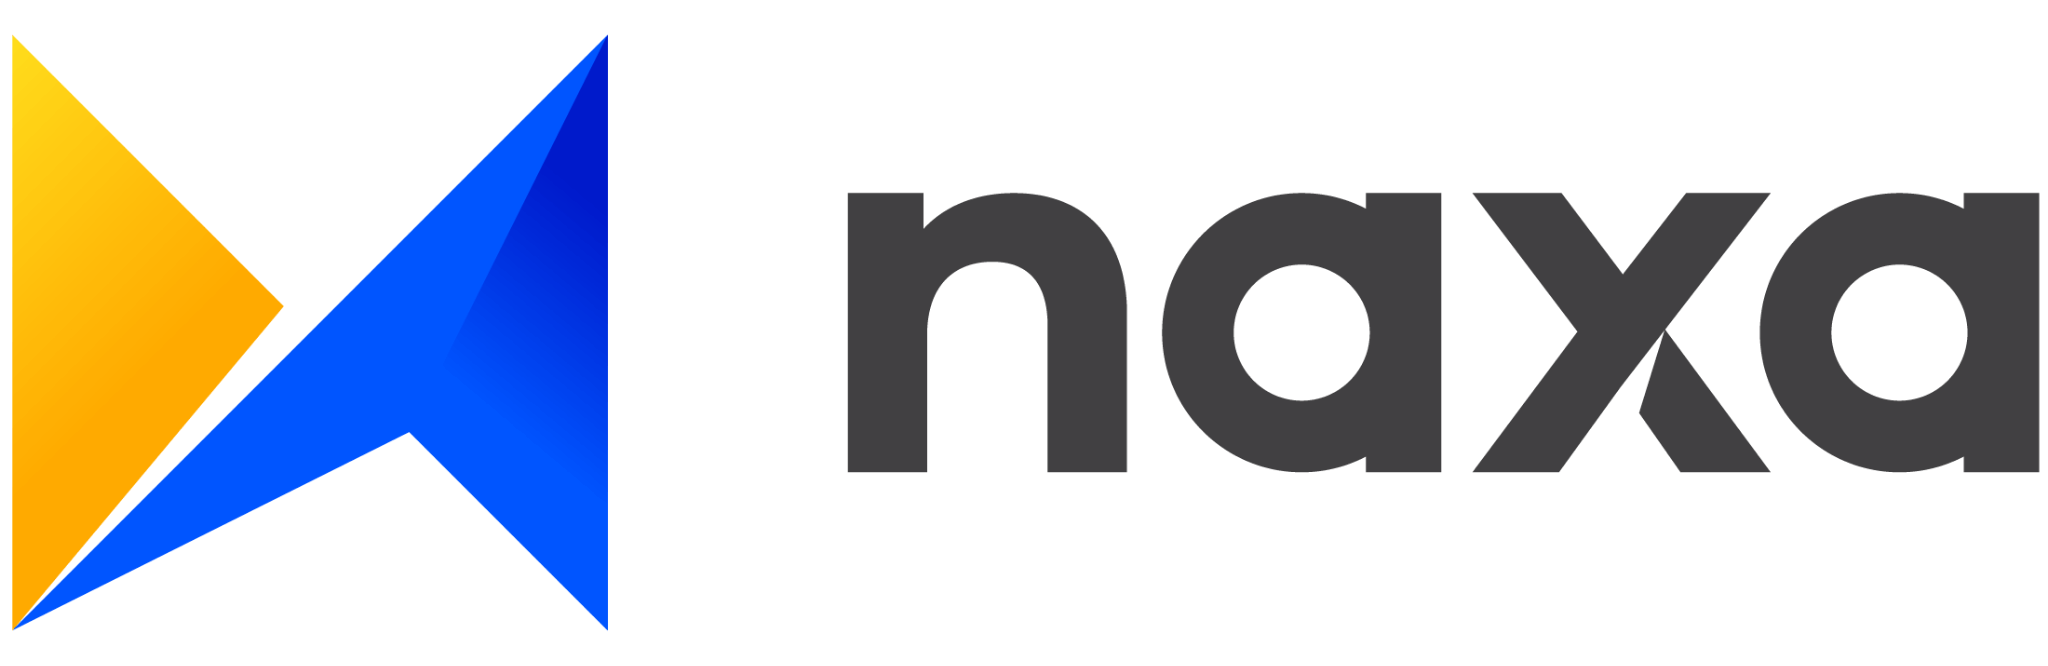 Naxa's logo